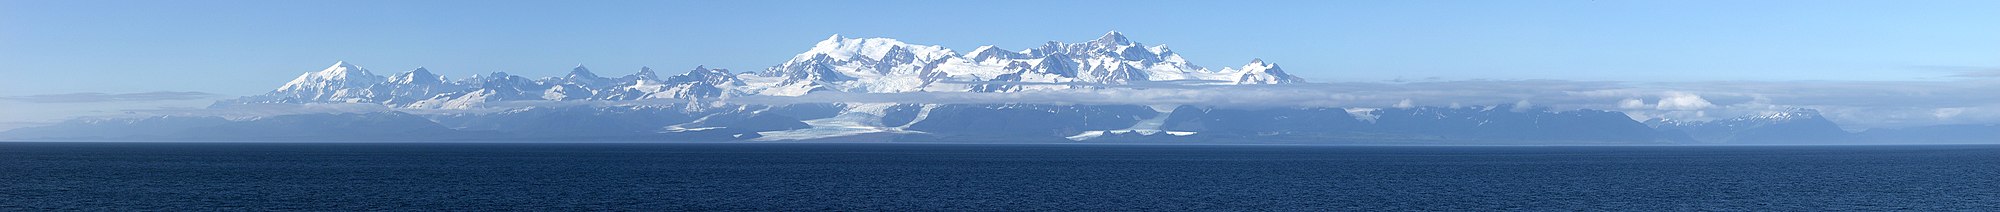 תצלום פנורמי של רכס פיירווד'ר - מבט מהאוקיינוס השקט. במרכז התמונה ההרים קריון, דאגלט ולה פרוז.